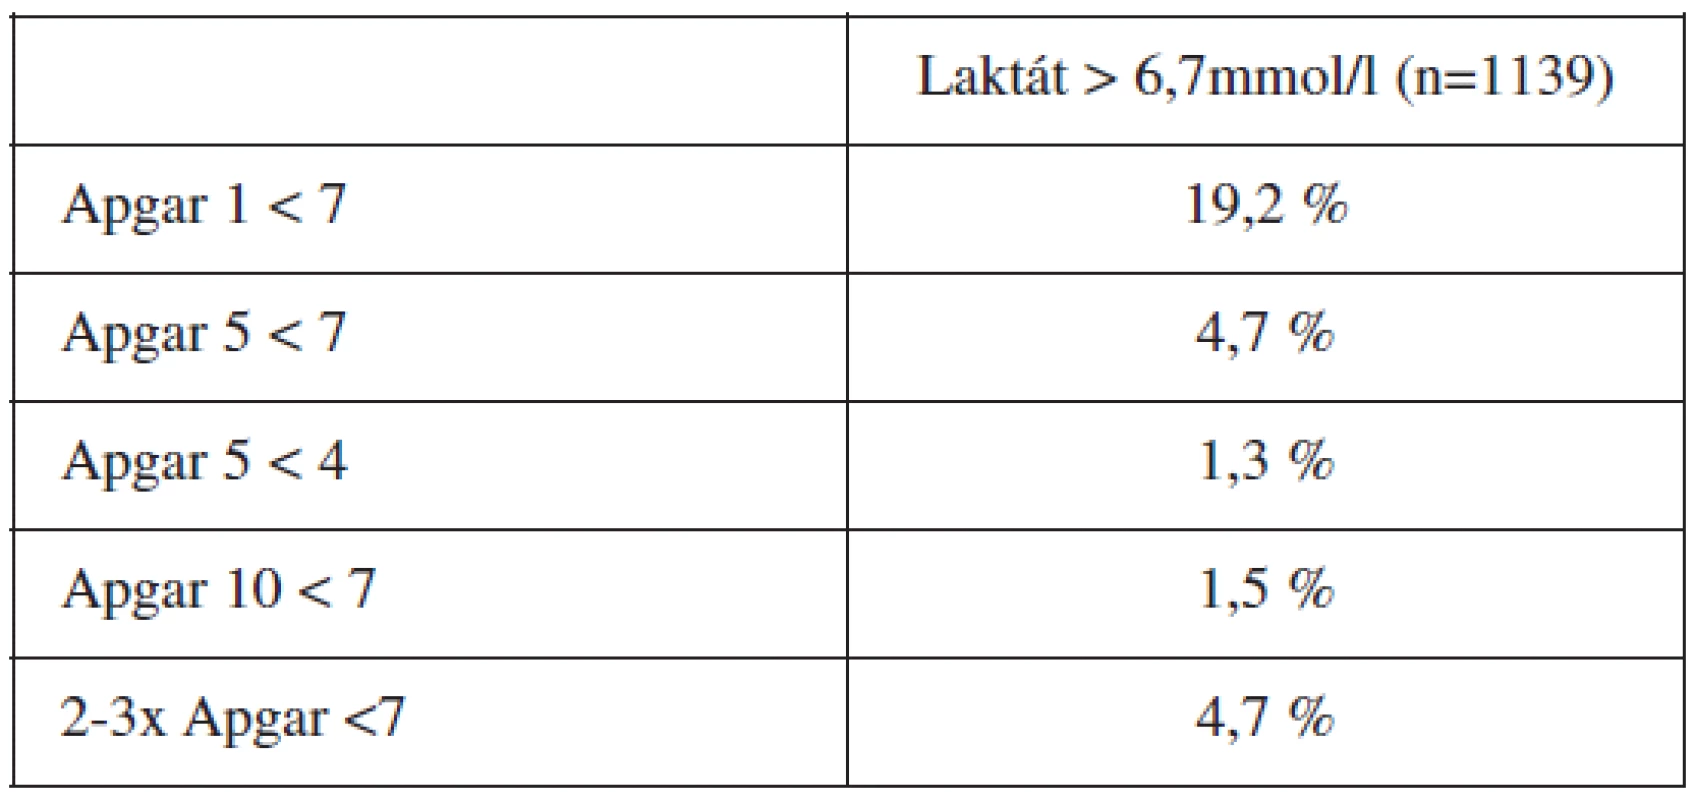 Frekvence patologických nálezů Apgarové u acidémie přesahující cutoff laktátu 6,7 mmol/l